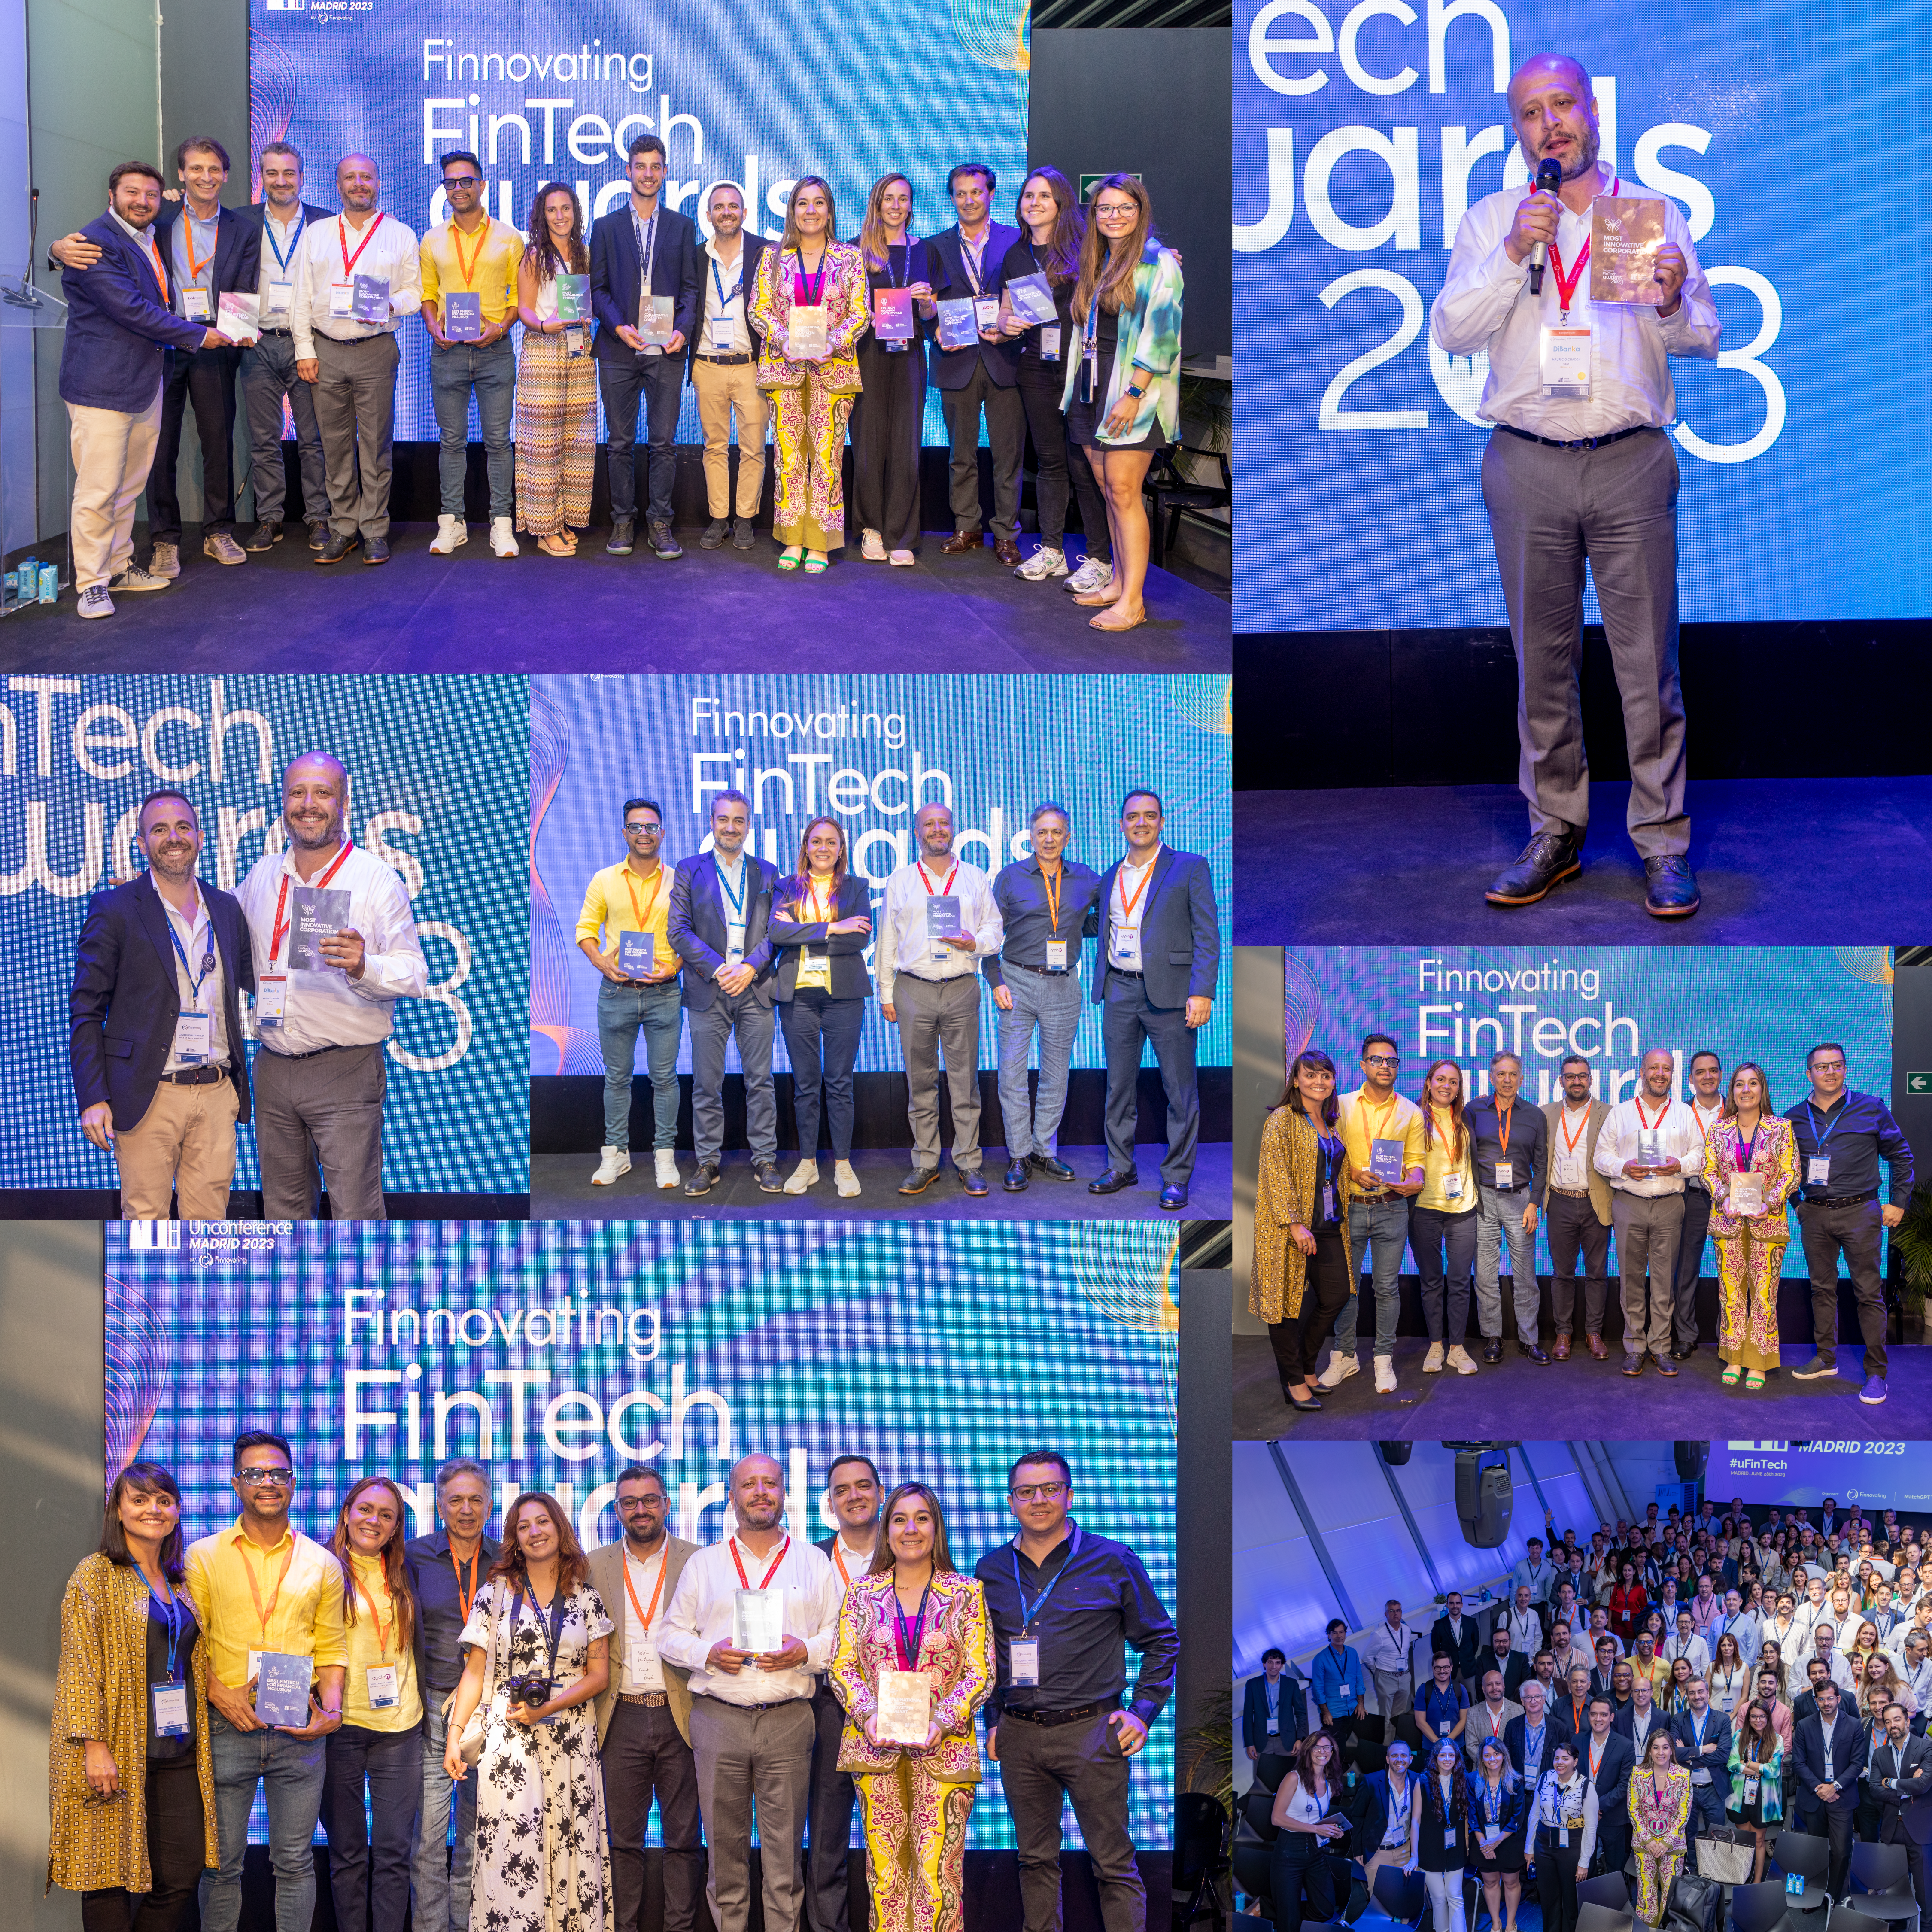  DiBANKA destaca en Fintech Unconference Madrid 2023 como la solución más innovadora del año